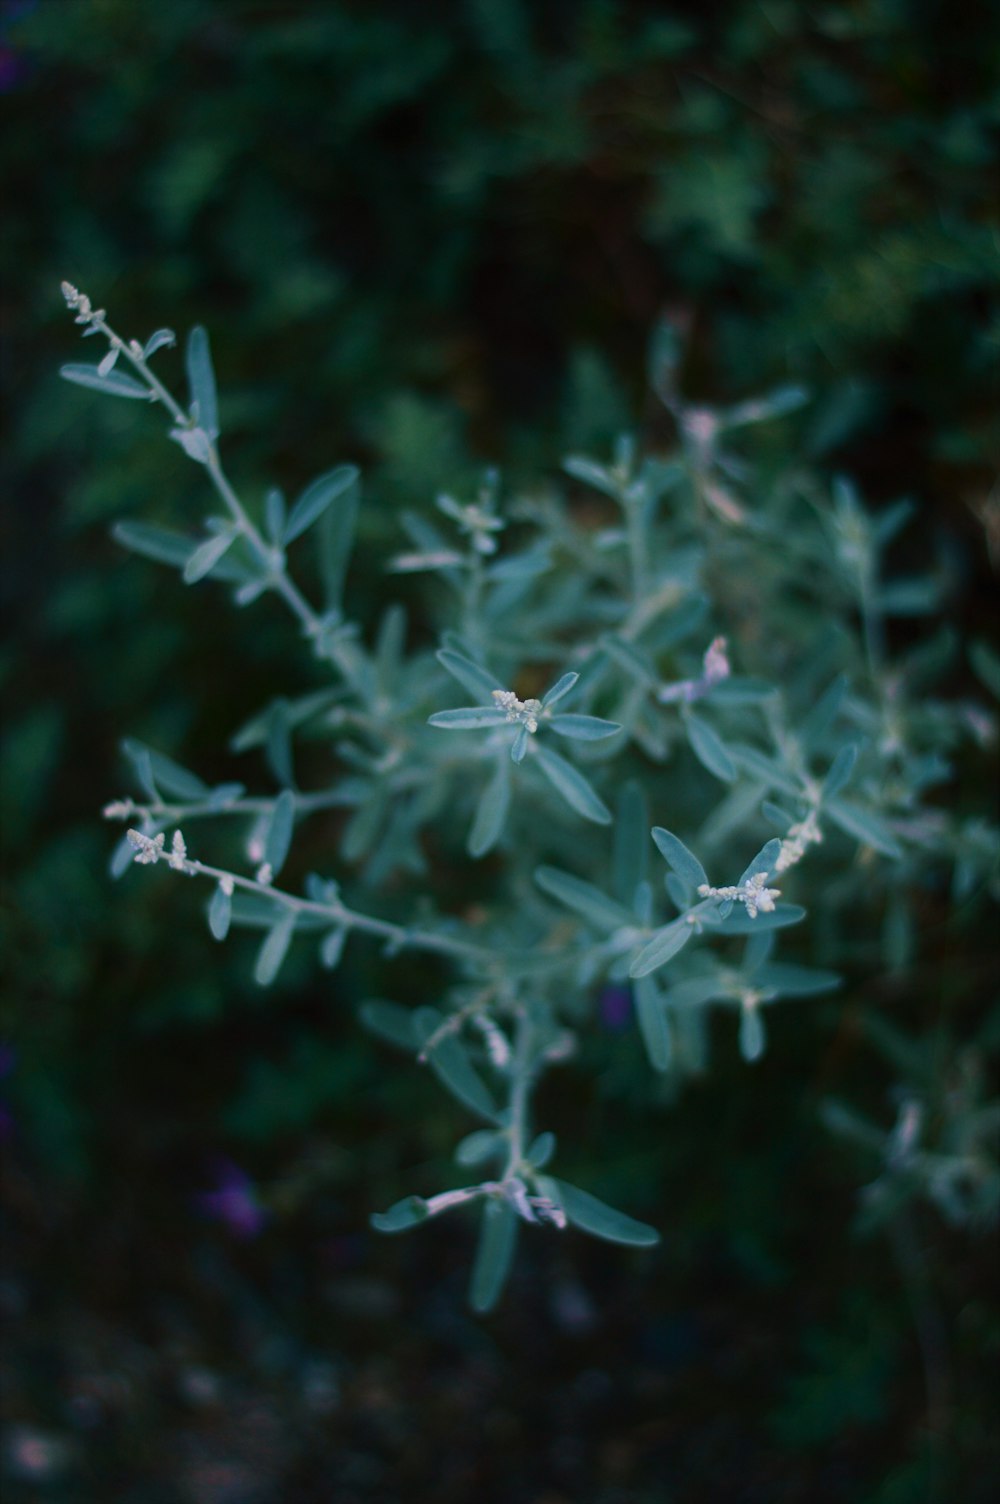 um close up de uma planta com pequenas flores brancas